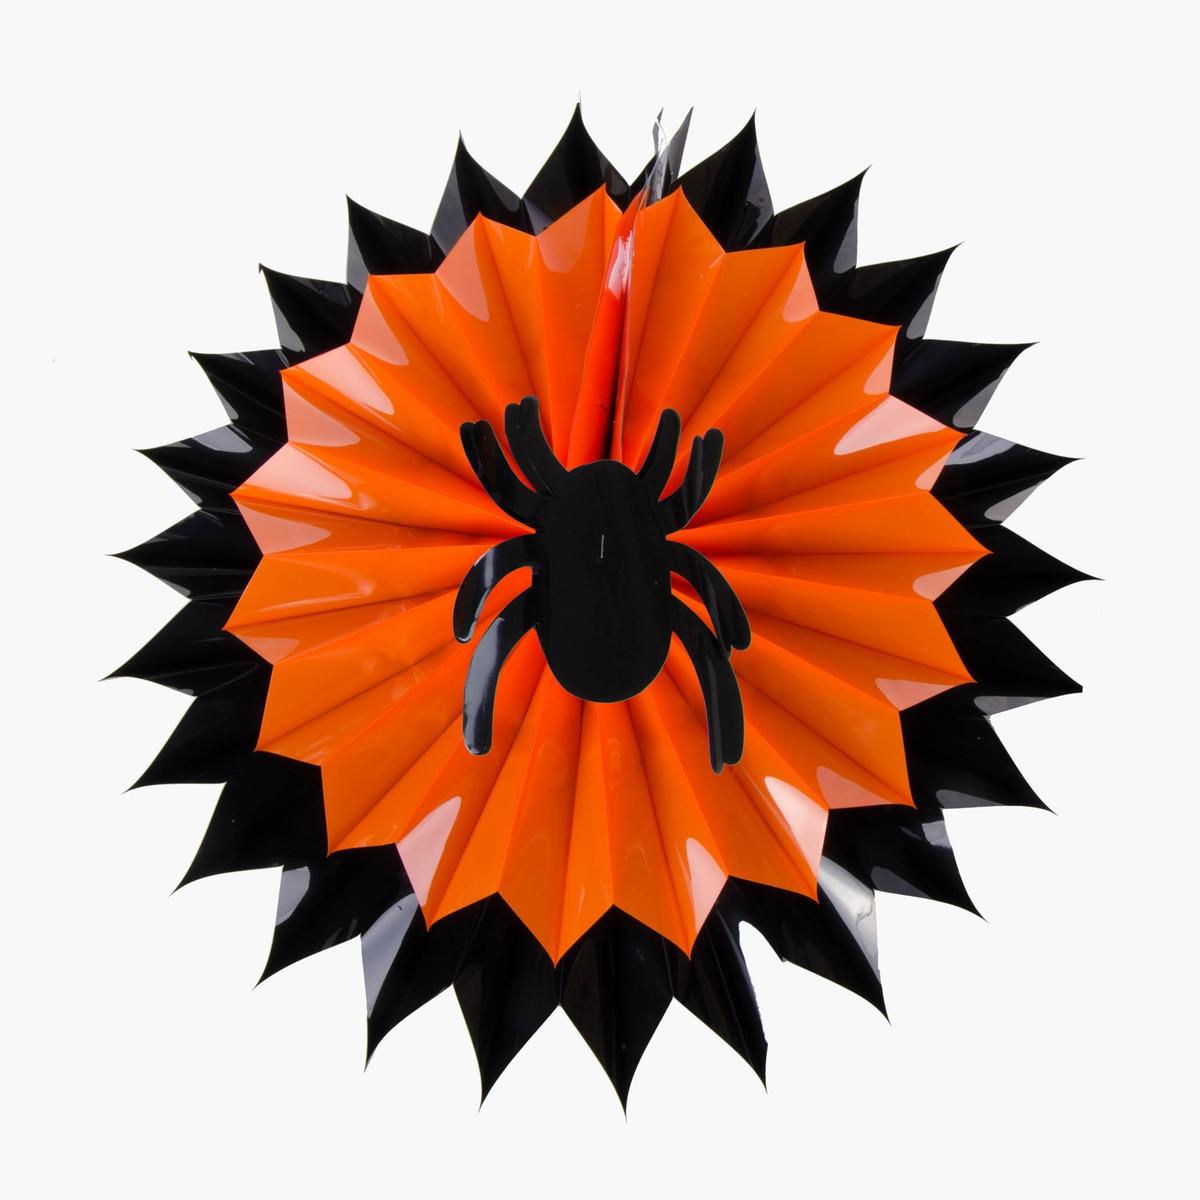 Décoration accordéon à suspendre en PVC - 40 cm - Noir et orange